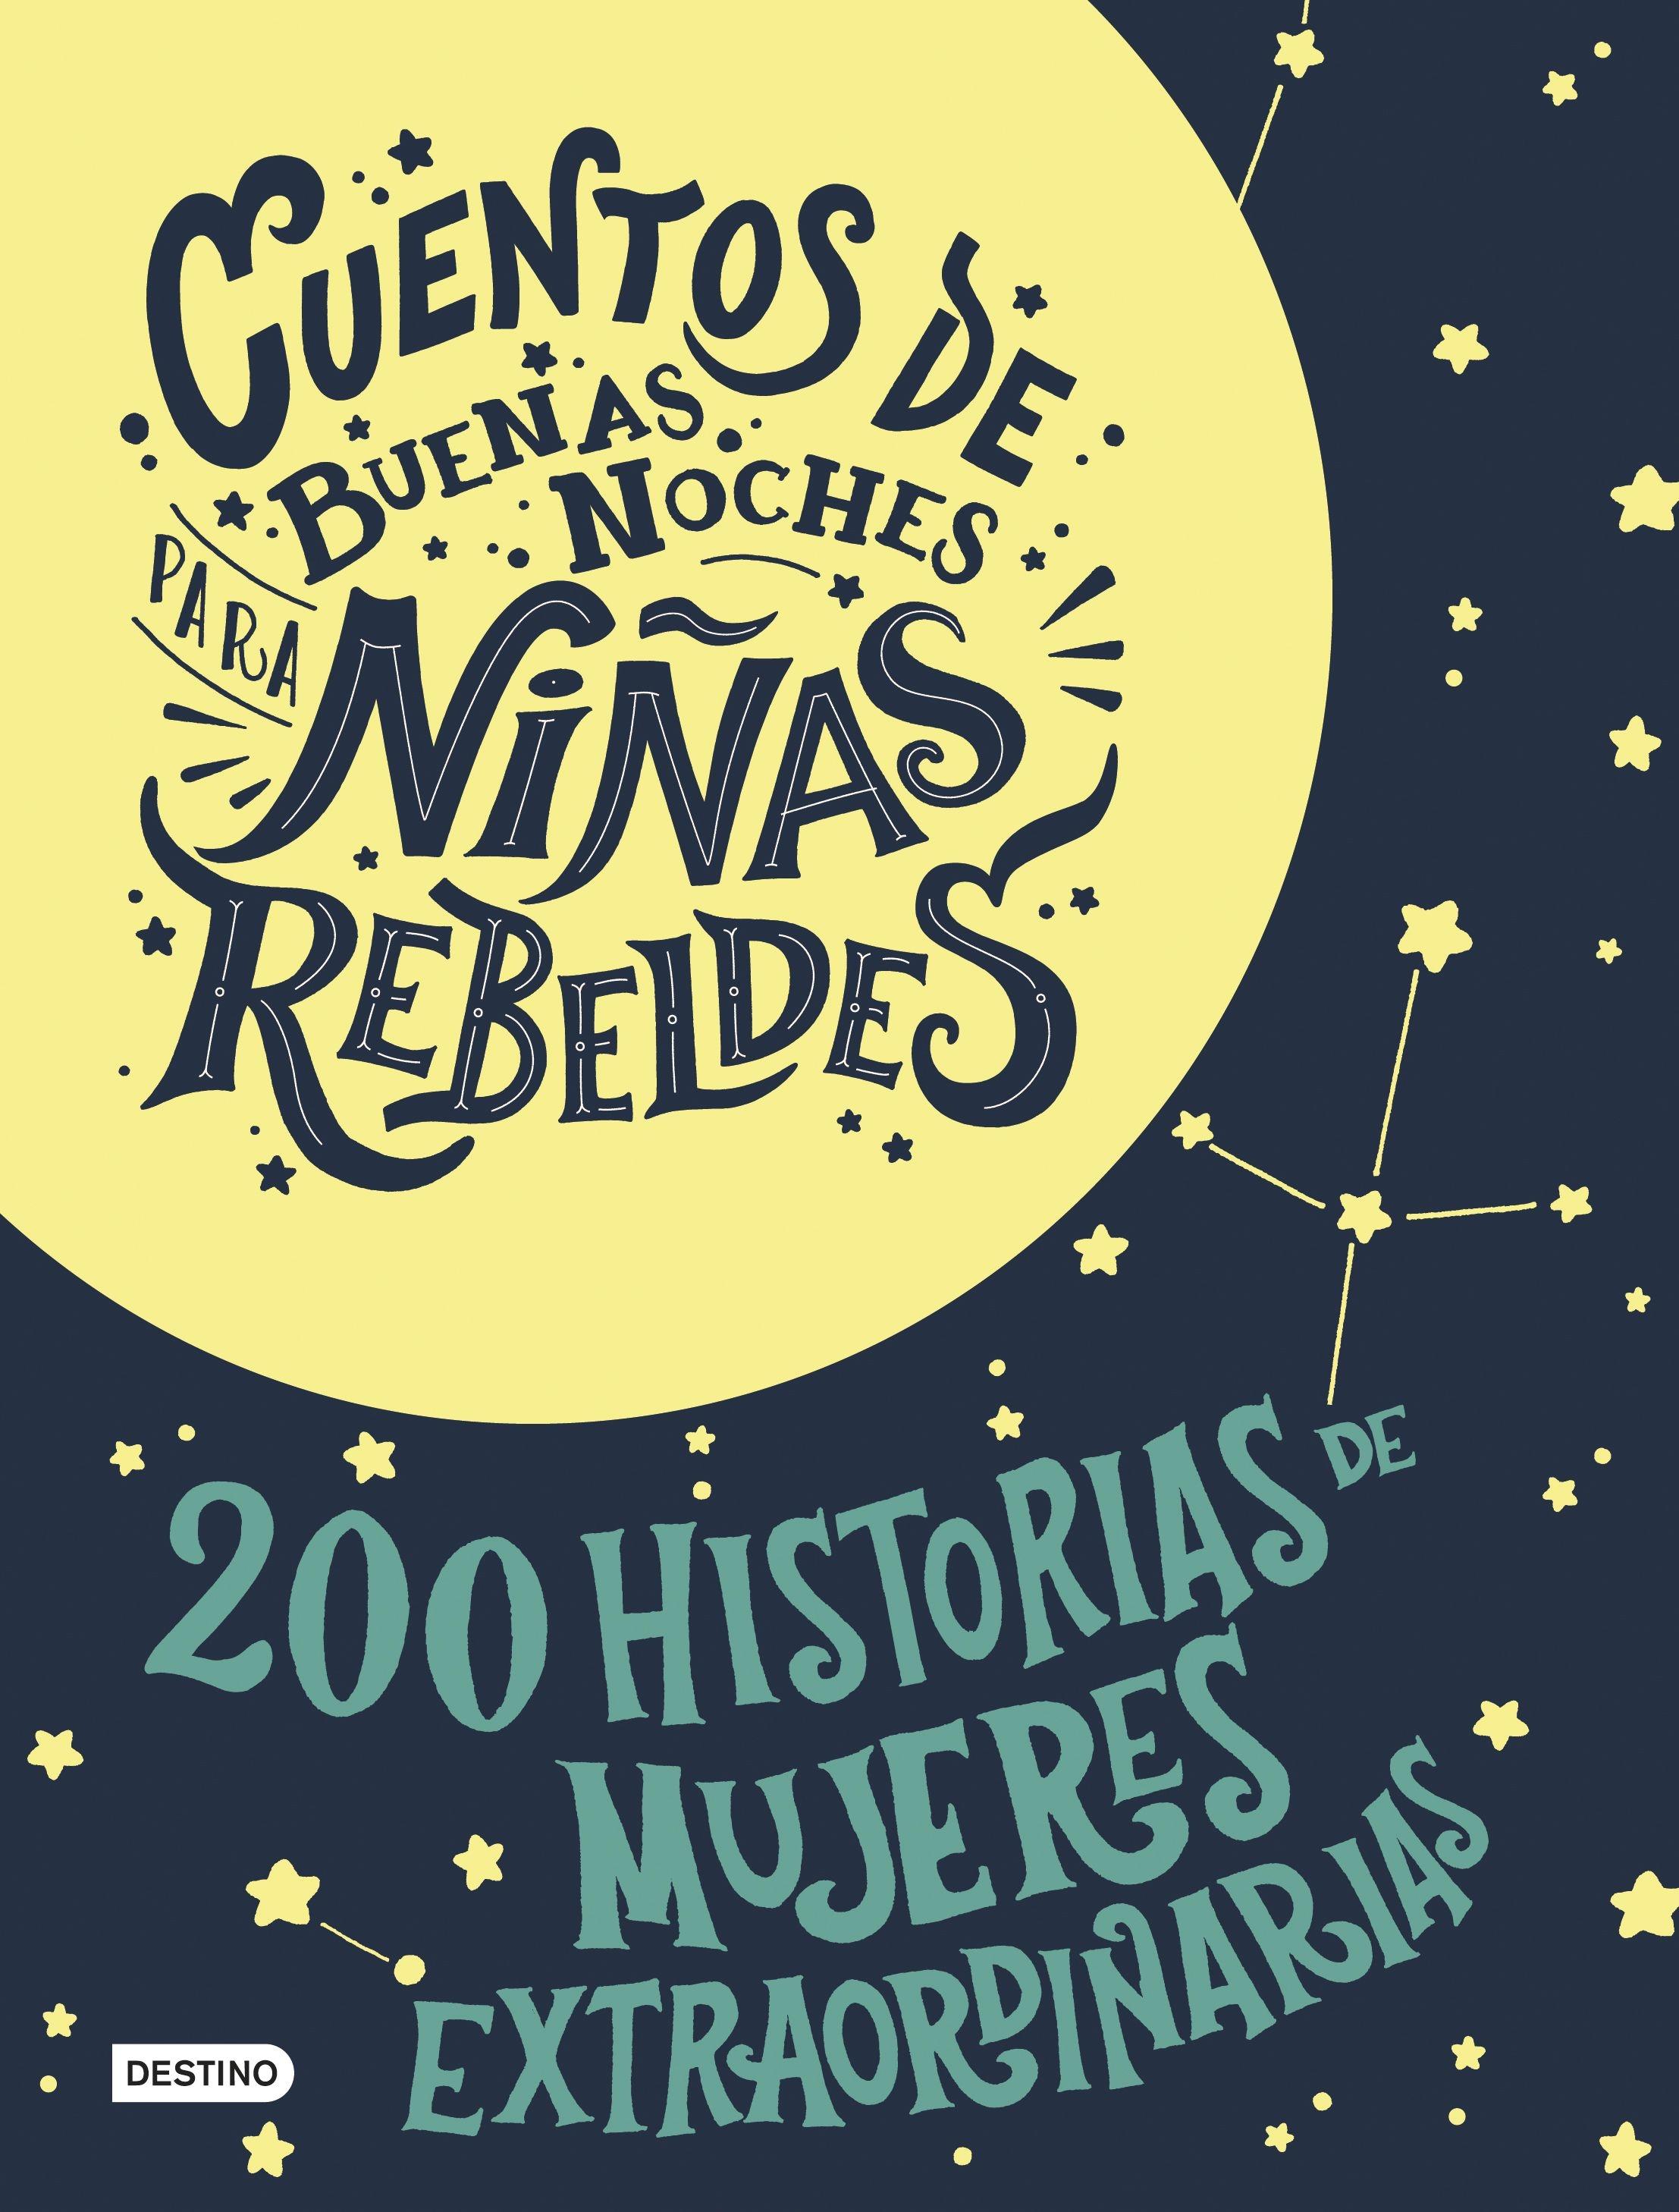 Estuche Cuentos de buenas noches para niñas rebeldes "200 Historias de mujeres extraordinarias + Bolsa de regalo". 